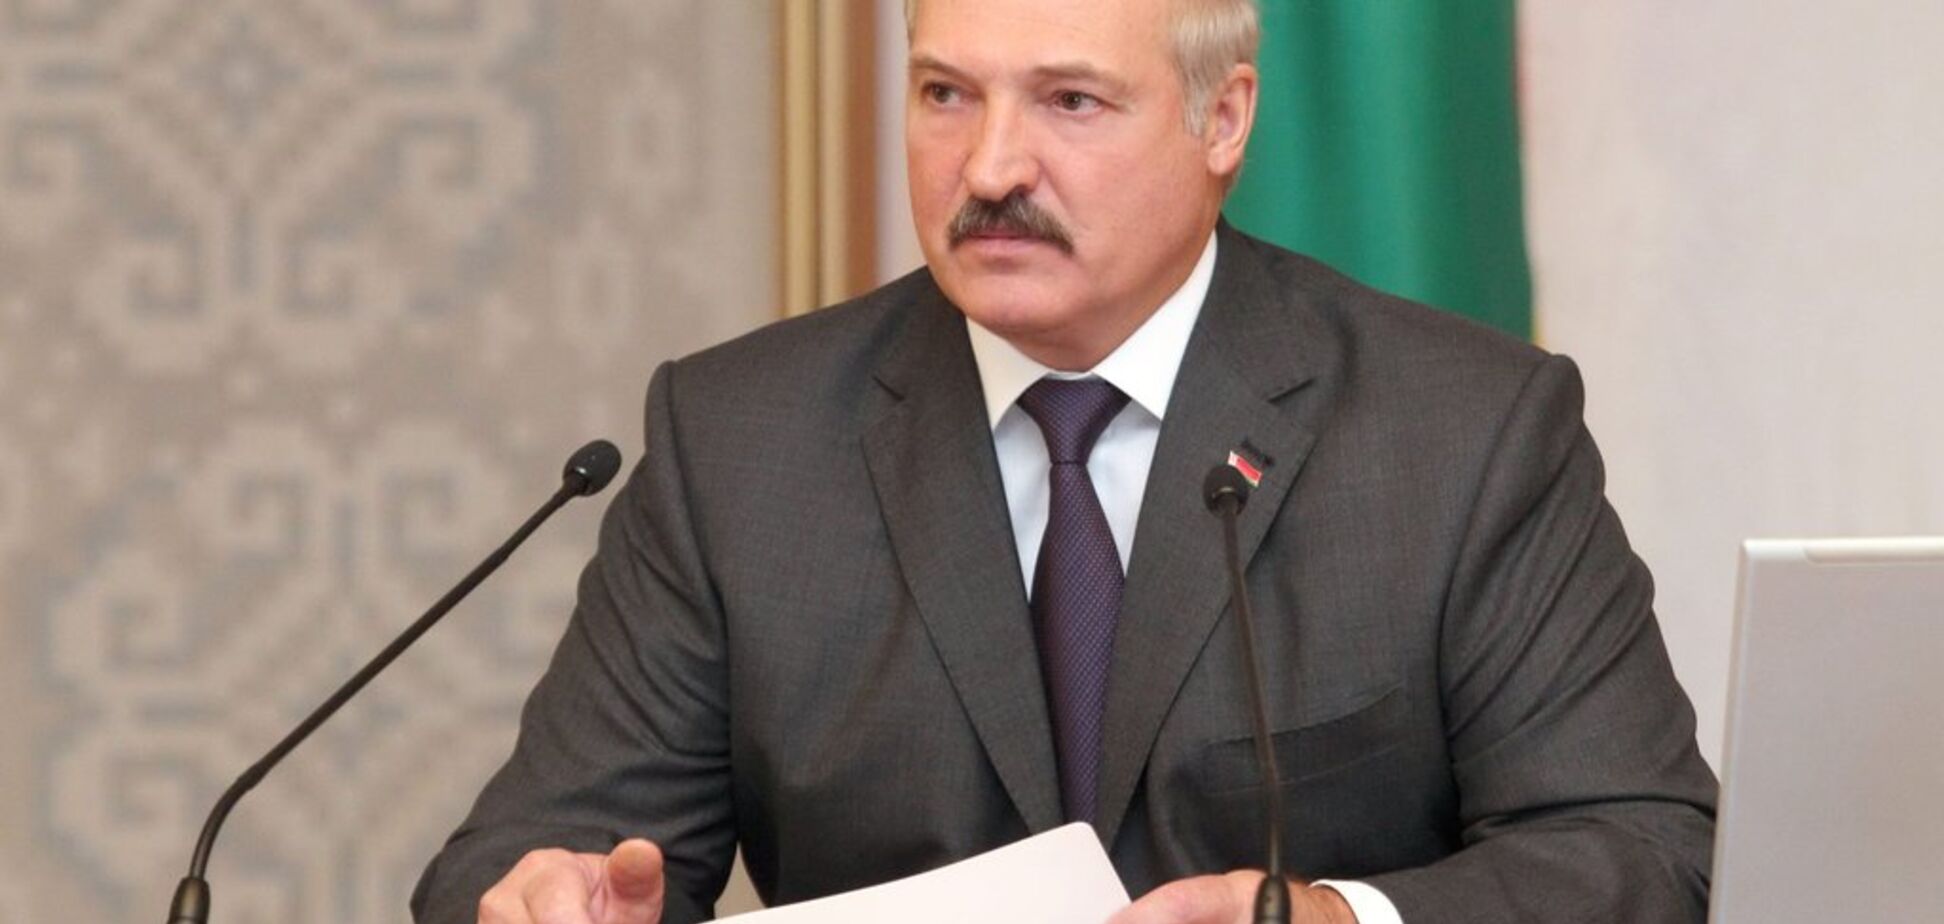 'Не будемо васалами': Лукашенко послав жорсткий сигнал Путіну